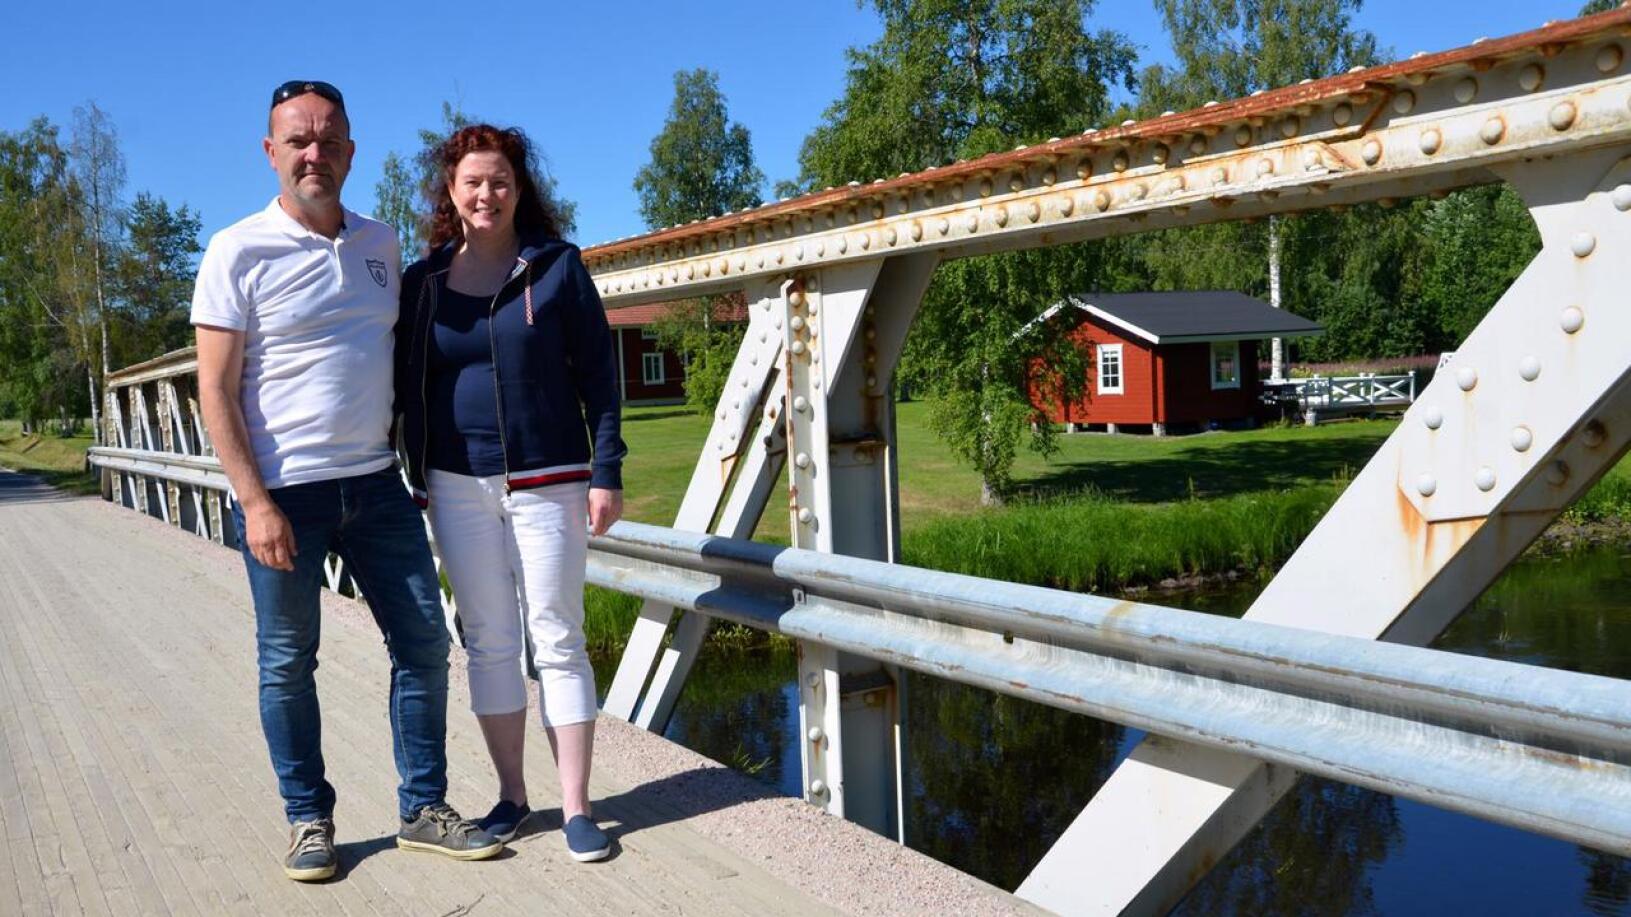 Mats Vidjeskog ja Susanne Witting-Vidjeskog järjestävät pohjalaistalonsa pihalla Allsång vid Forssas -tapahtuman, joka pidetään nyt viidettä kertaa peräkkäin. Esiintymislavana toimii saunan terassi.